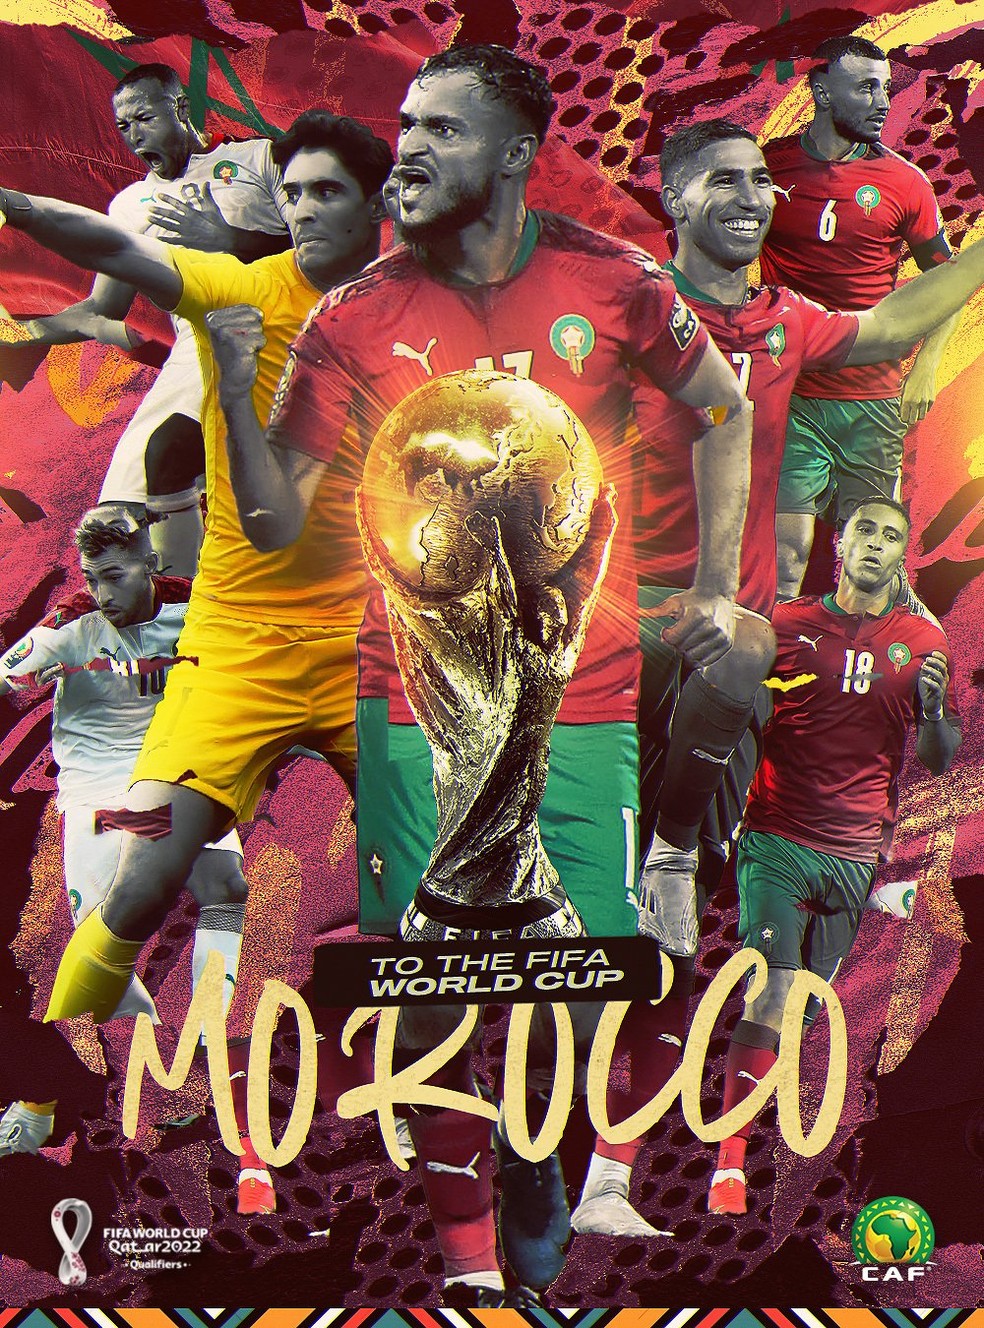 Copa do Mundo 2022: Confira a incrível colaboração entre a Seleção